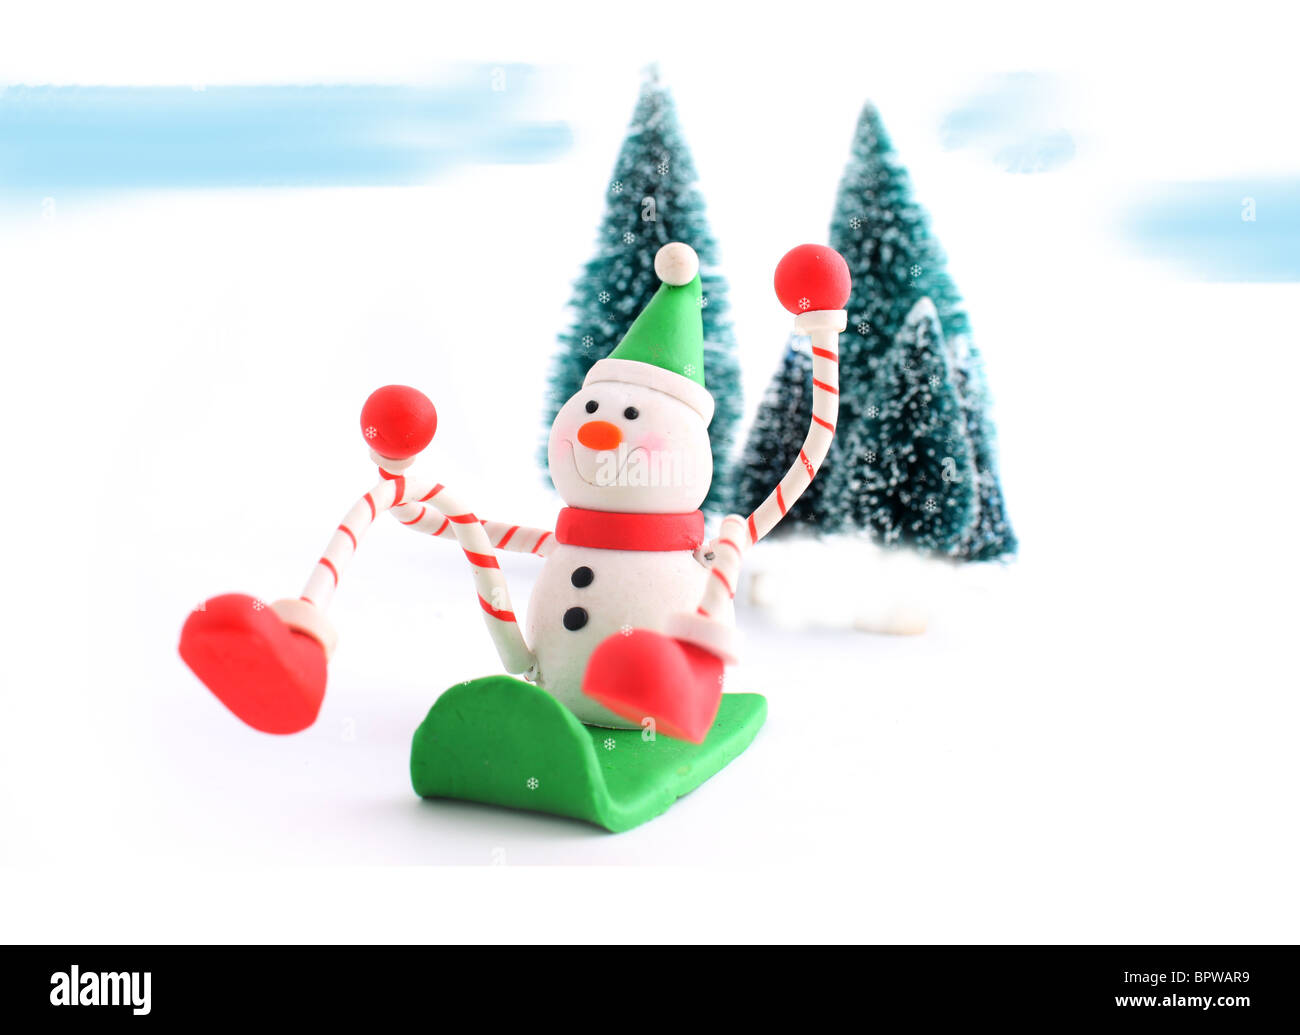 Schneemann Weihnachten Charakter Abrutschen einer Snowhill auf einem Schlitten mit Pinien im Hintergrund, ideal für eine Grußkarte Stockfoto